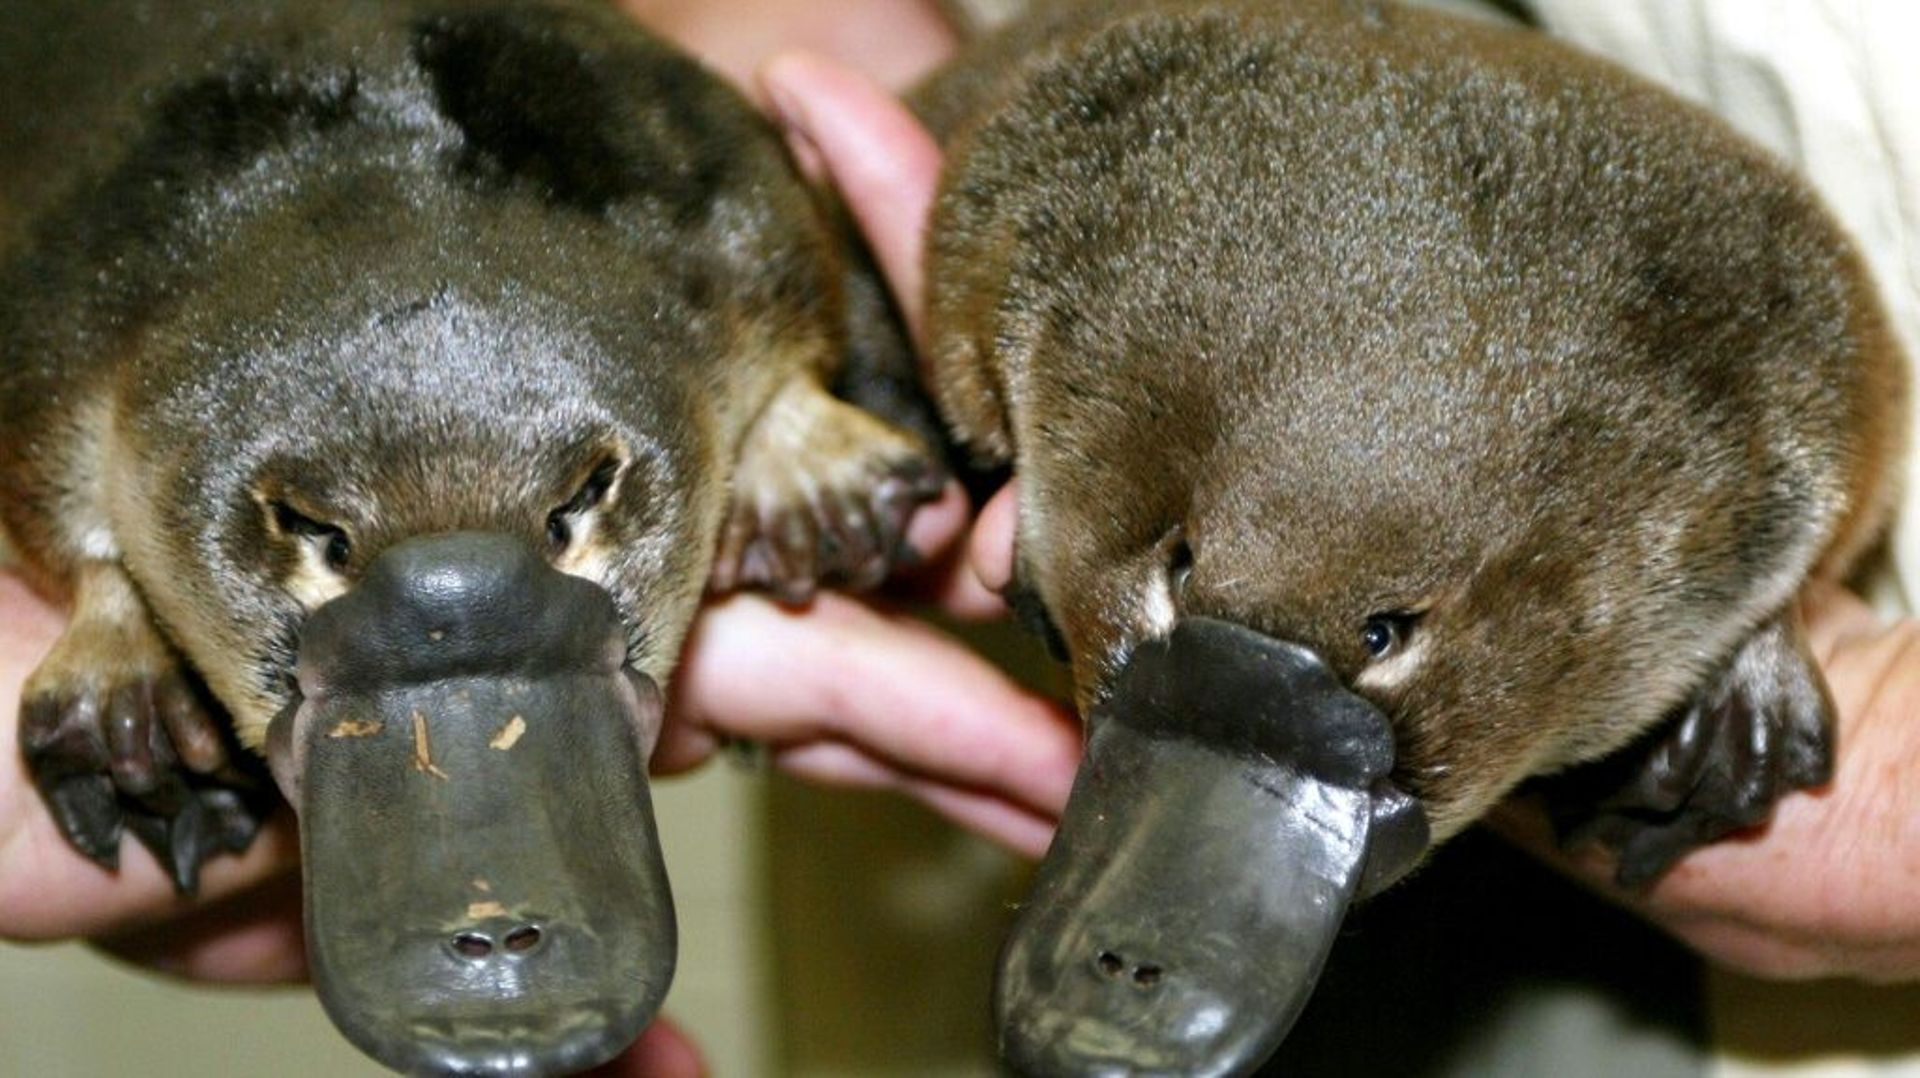 Des ornithorynques jumeaux nés en captivités montrés à Sydney le 28 mars 2003